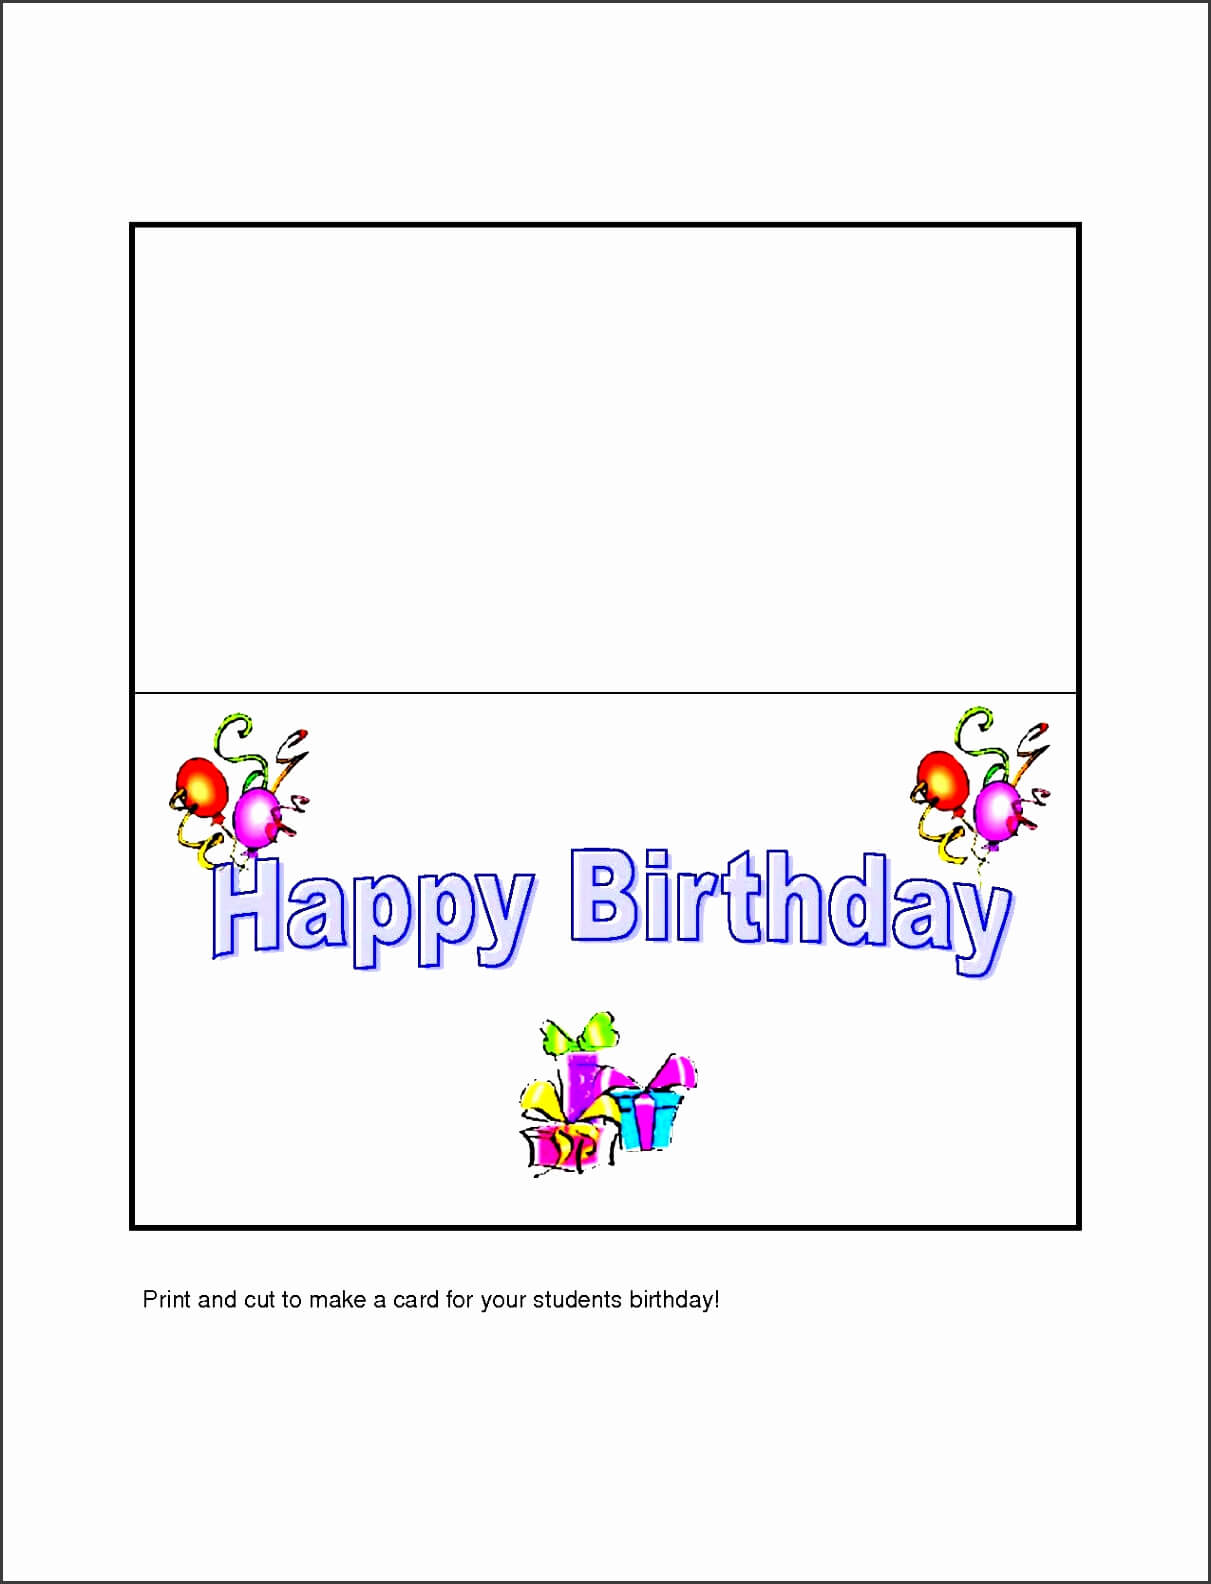 Beautiful 10 Free Microsoft Word Greeting Card Templates In Birthday Card Template Microsoft Word